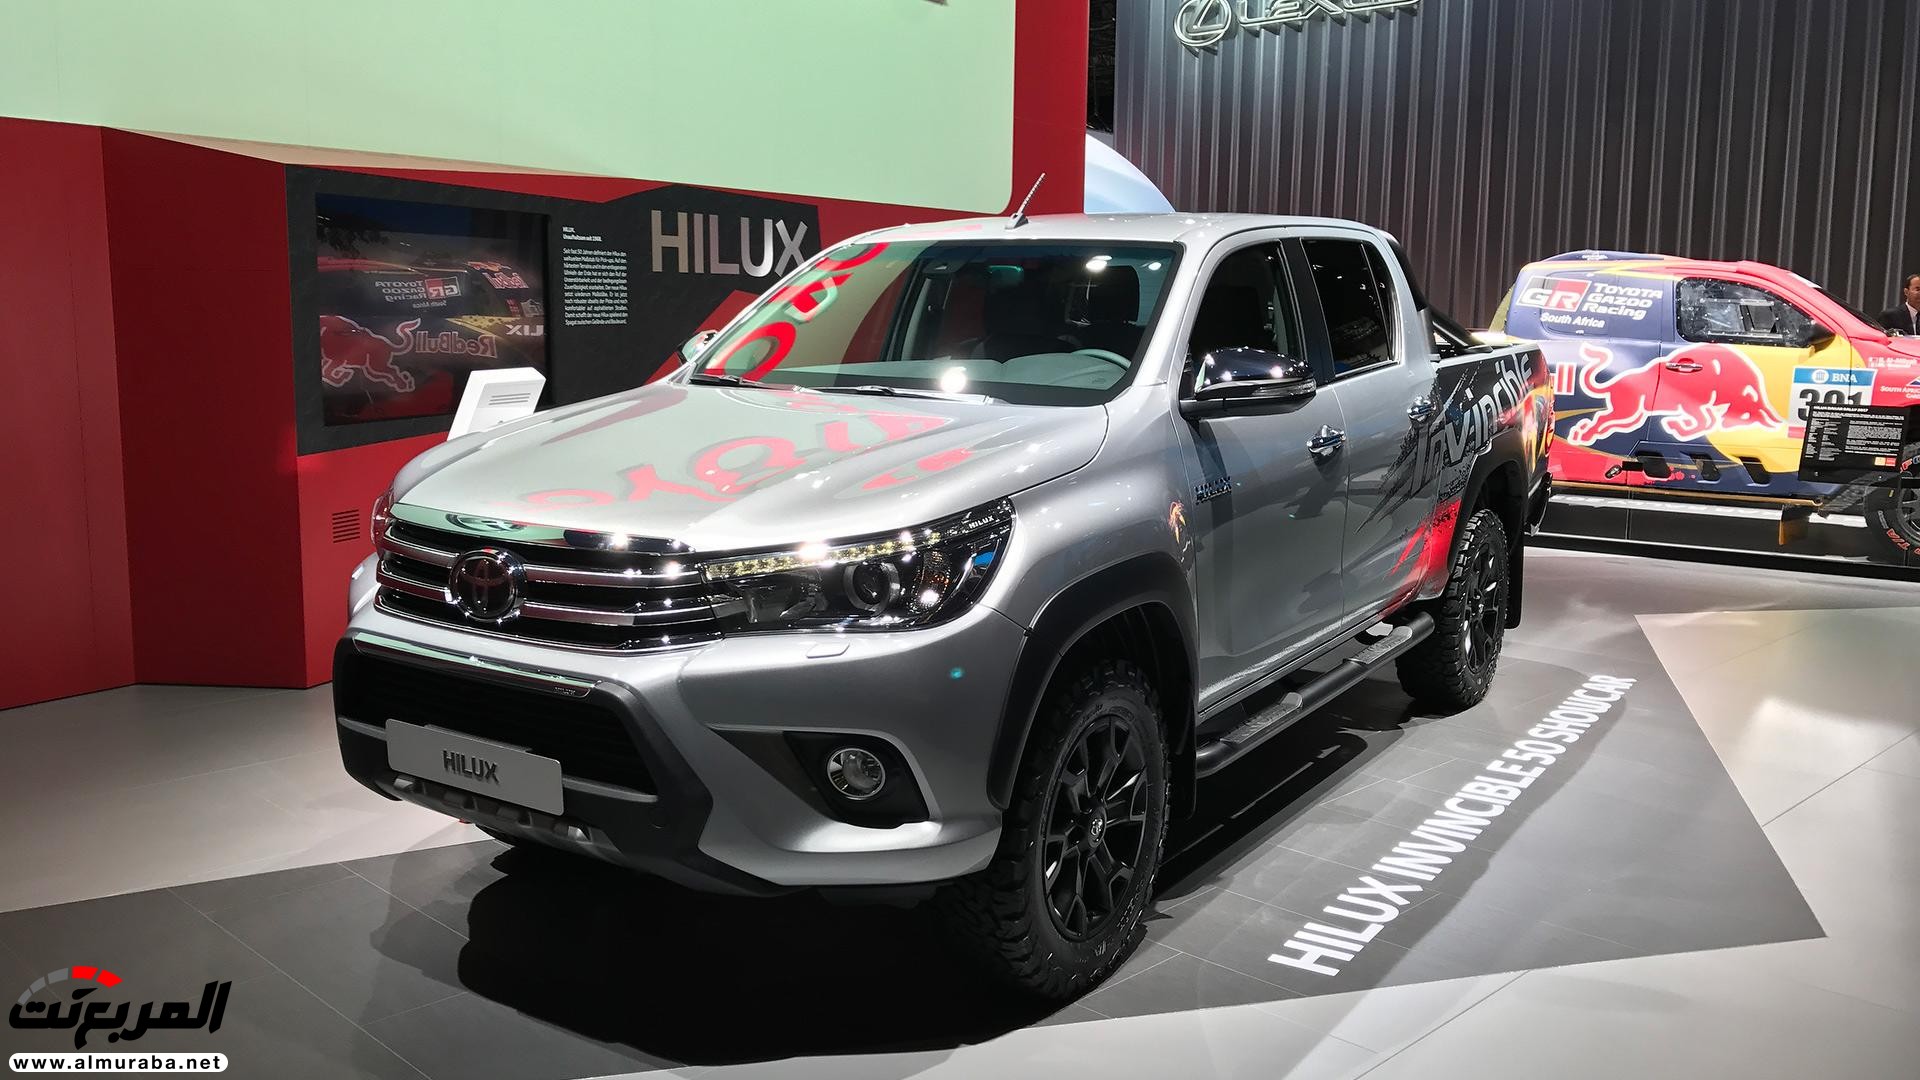 تويوتا هايلكس 2018 الاصدار الخاص بمناسبة مرور 50 عام "تقرير وصور" Toyota Hilux 51